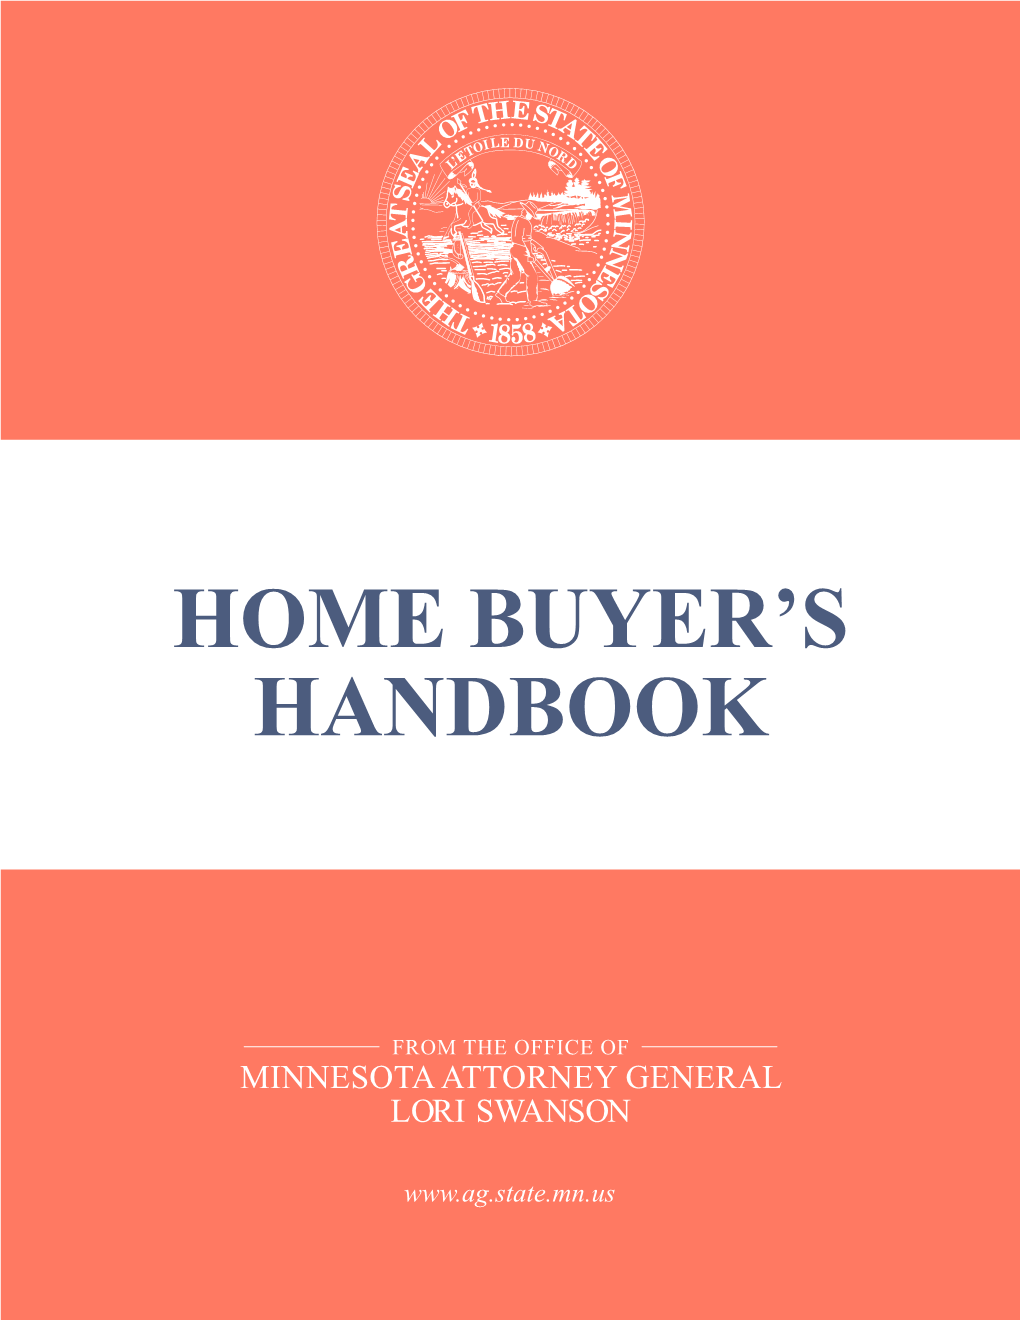 Home Buyer's Handbook